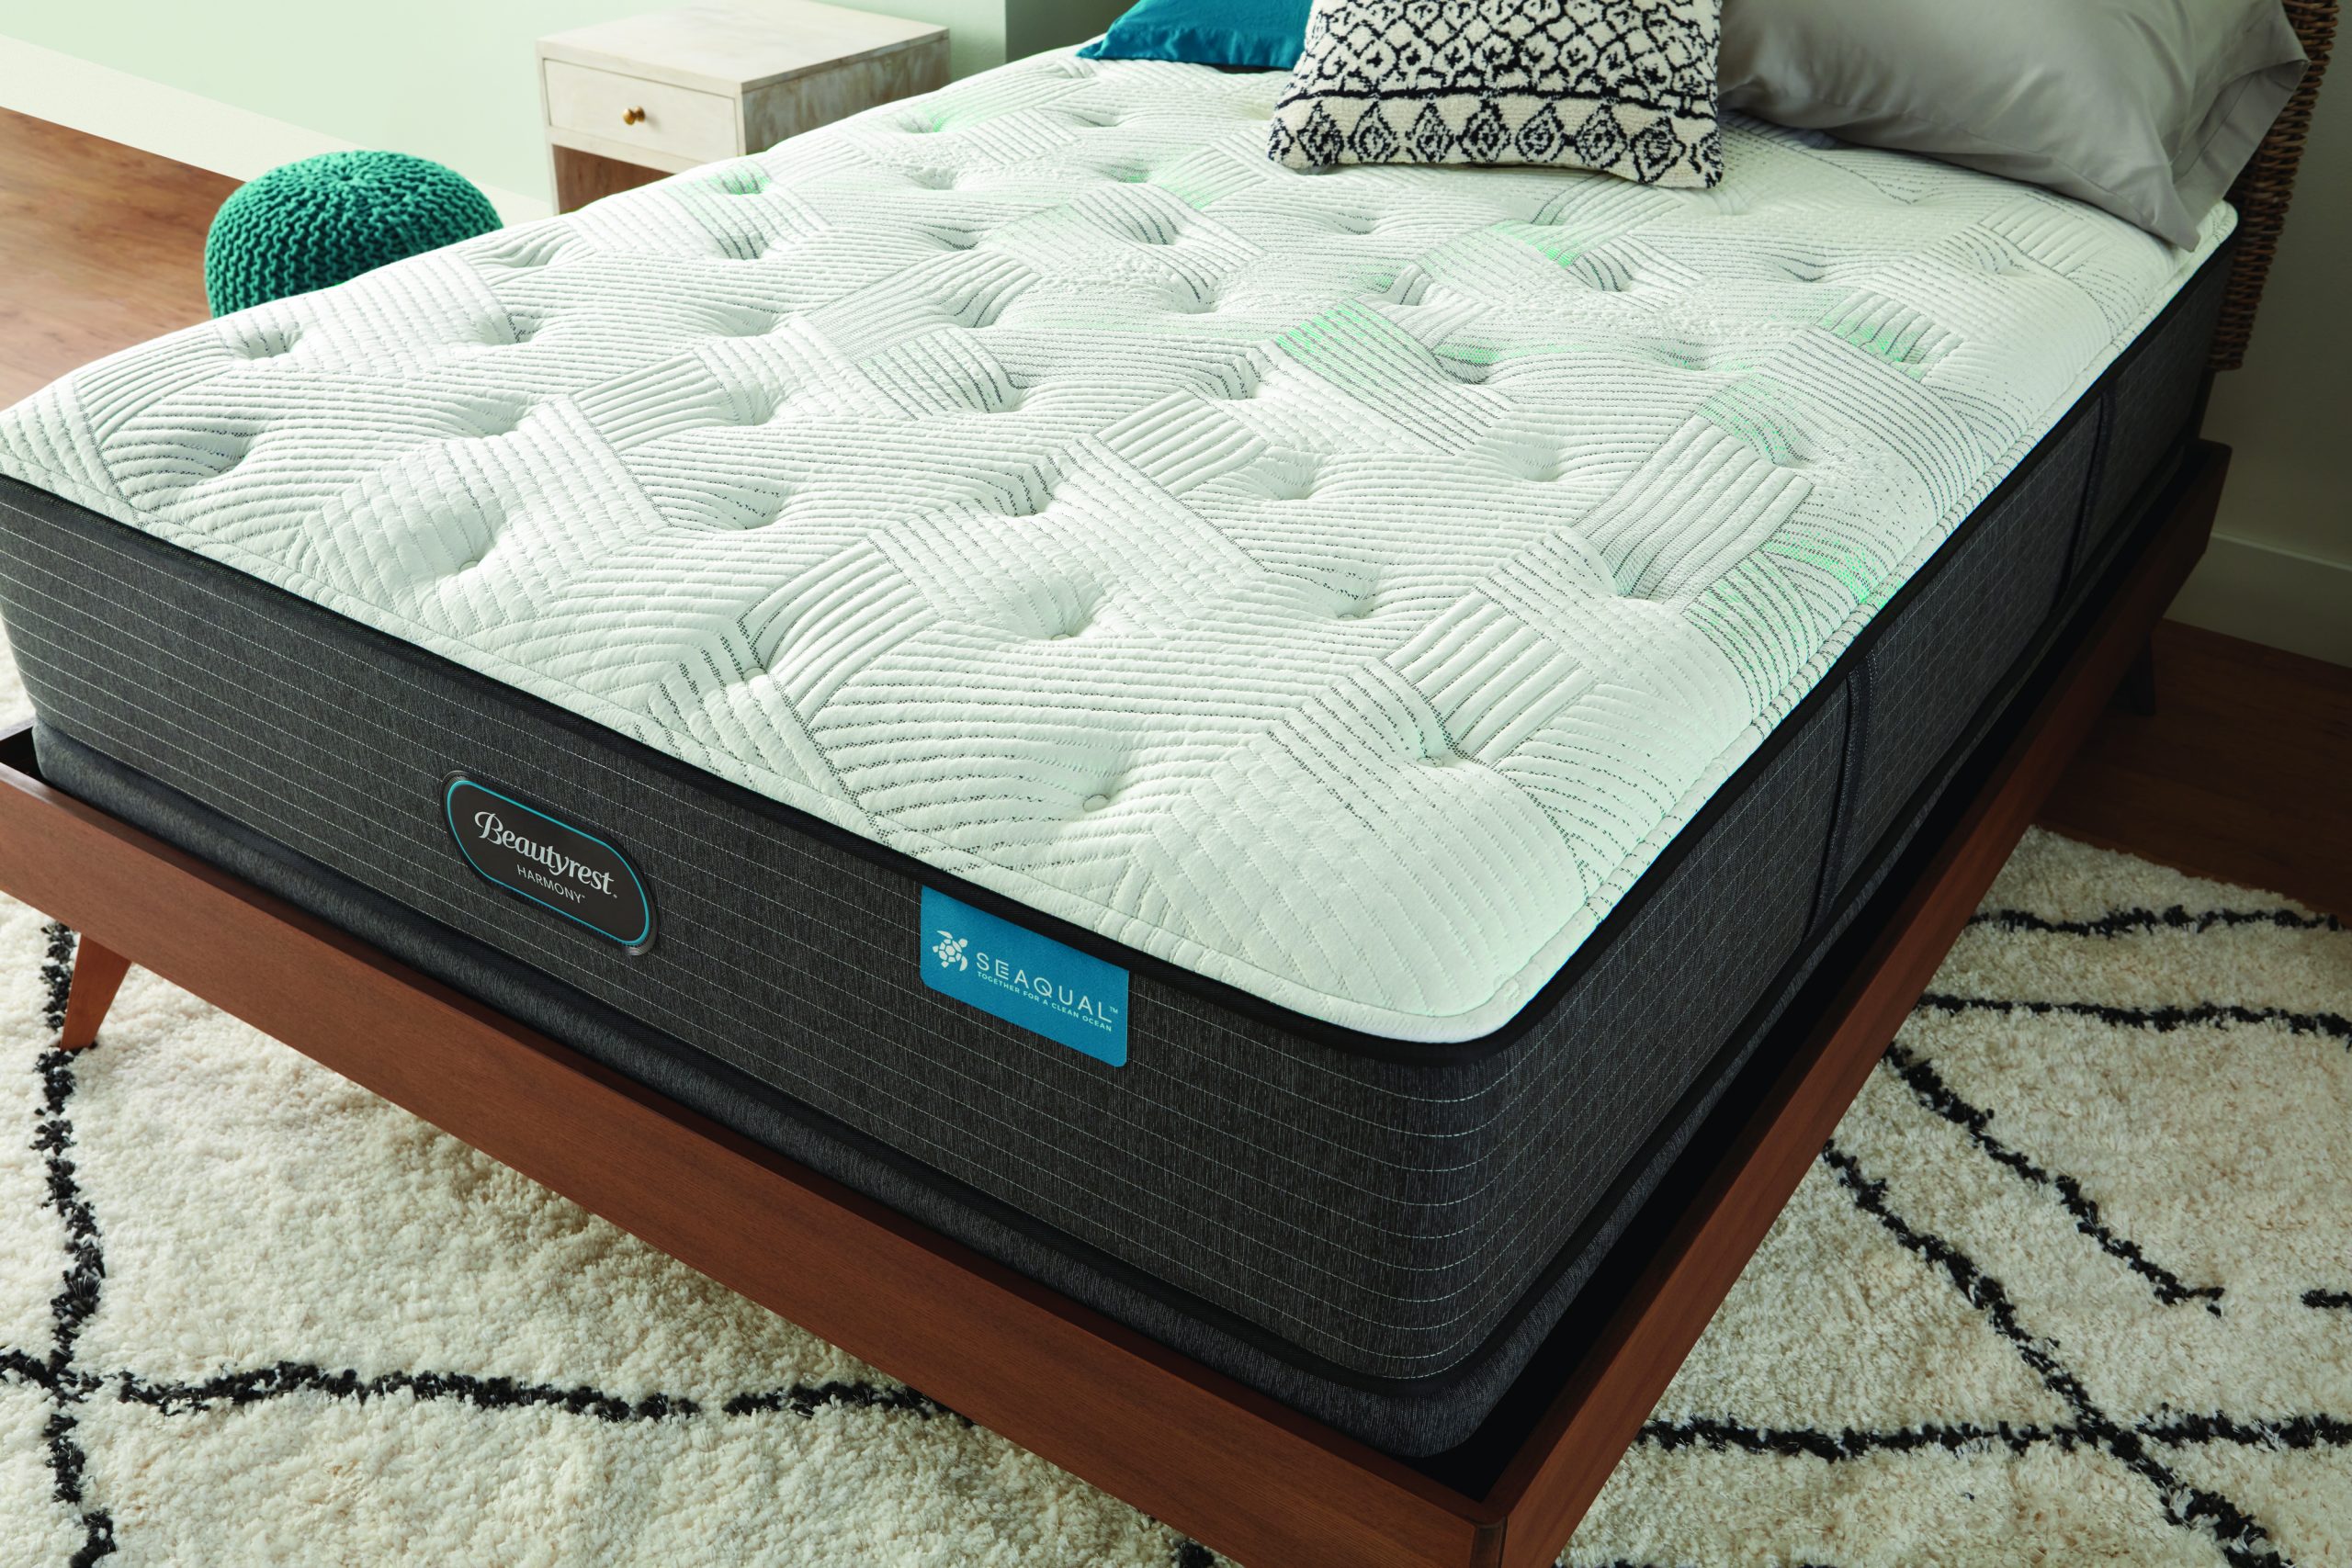 w hotels plush top mattress reviews